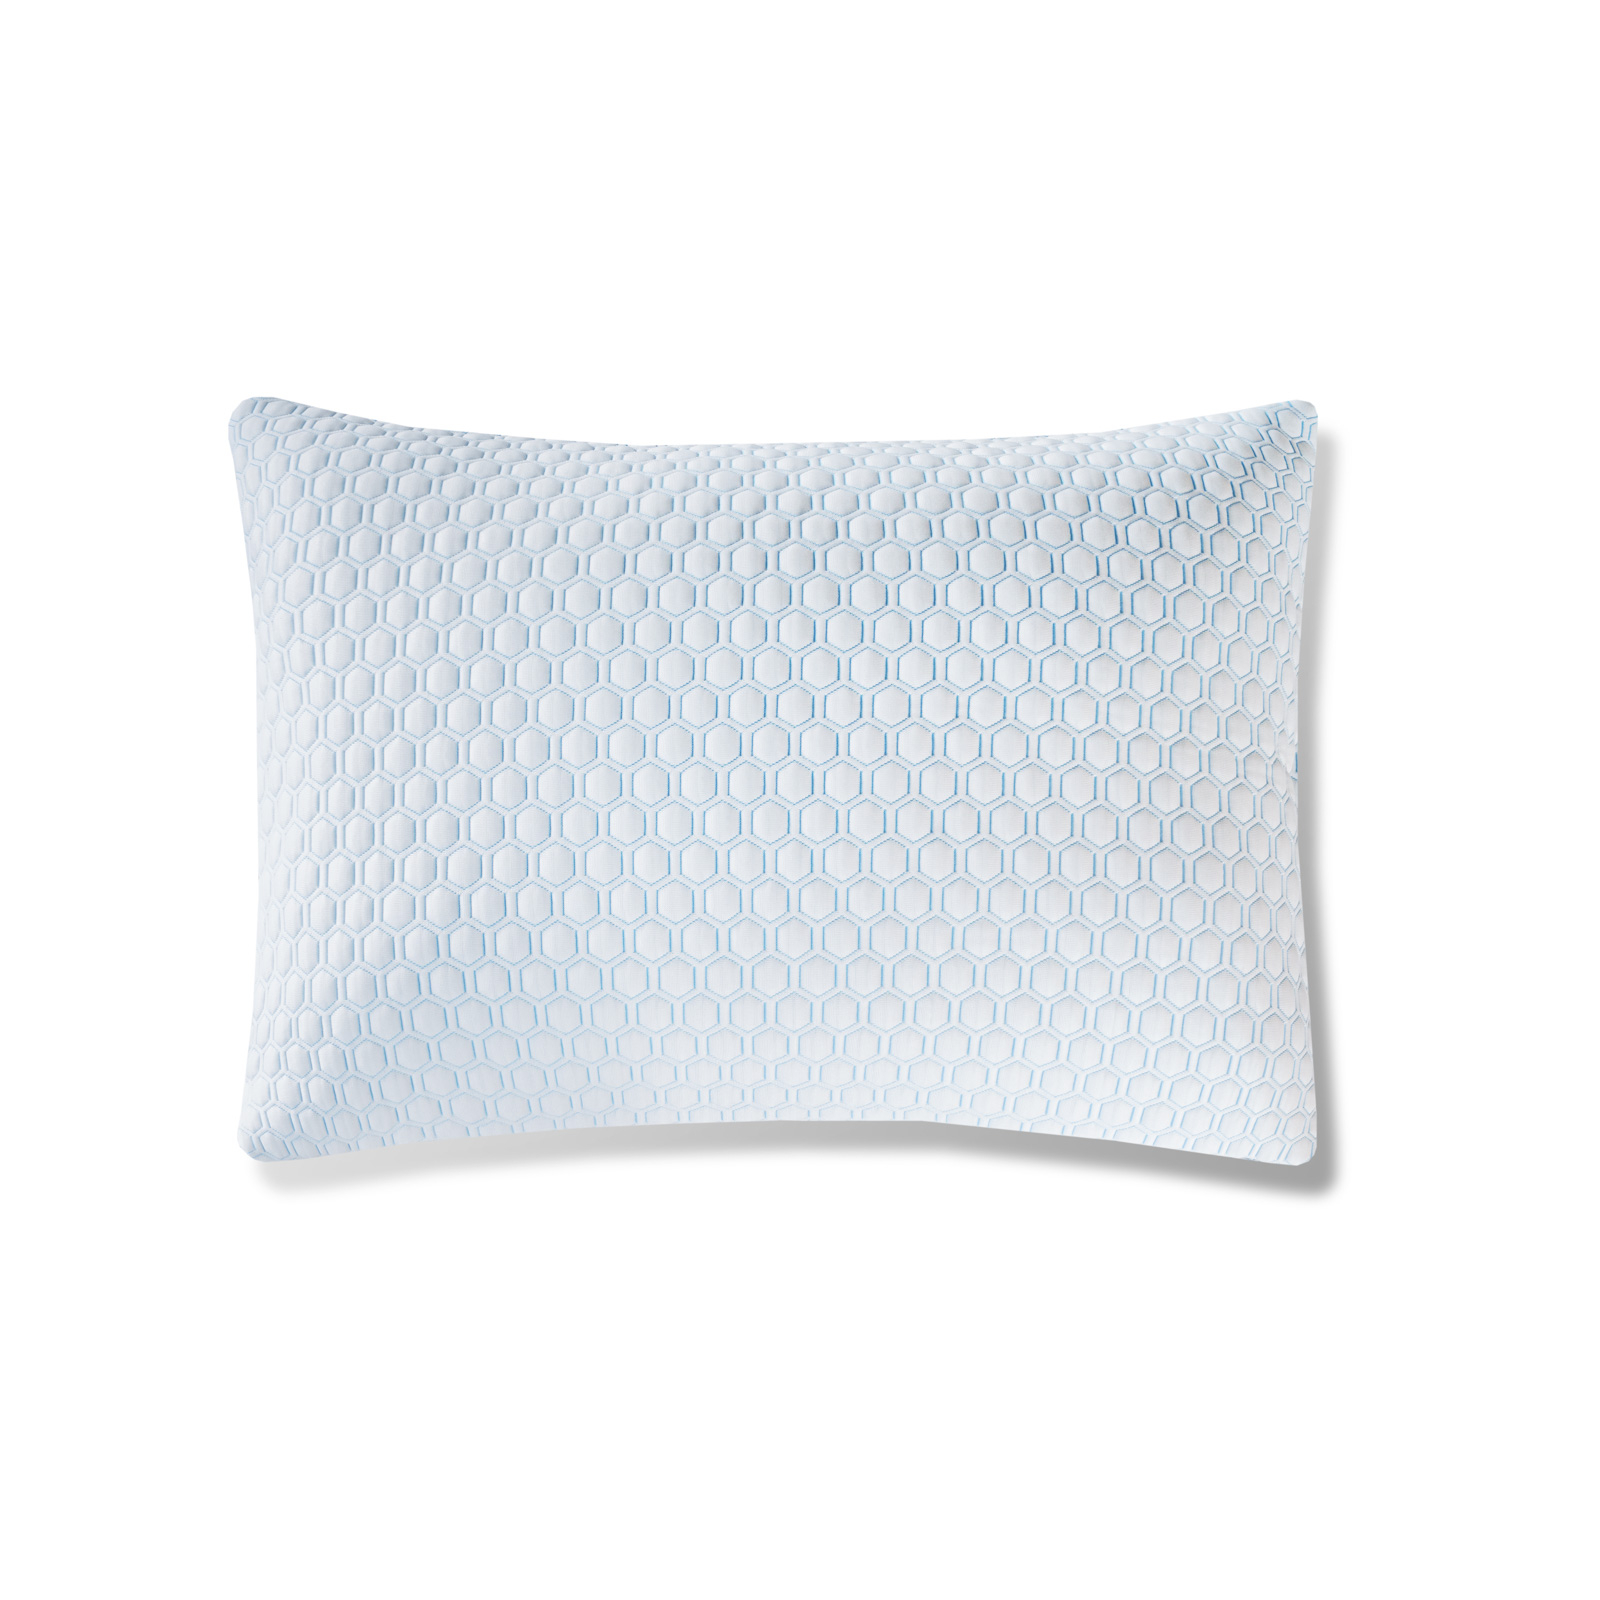 Защитный чехол для подушки Medsleep Orto Cool белый с голубым 50х70 см защитный   для подушки medsleep fresh sleep белый с голубым 50х70 см